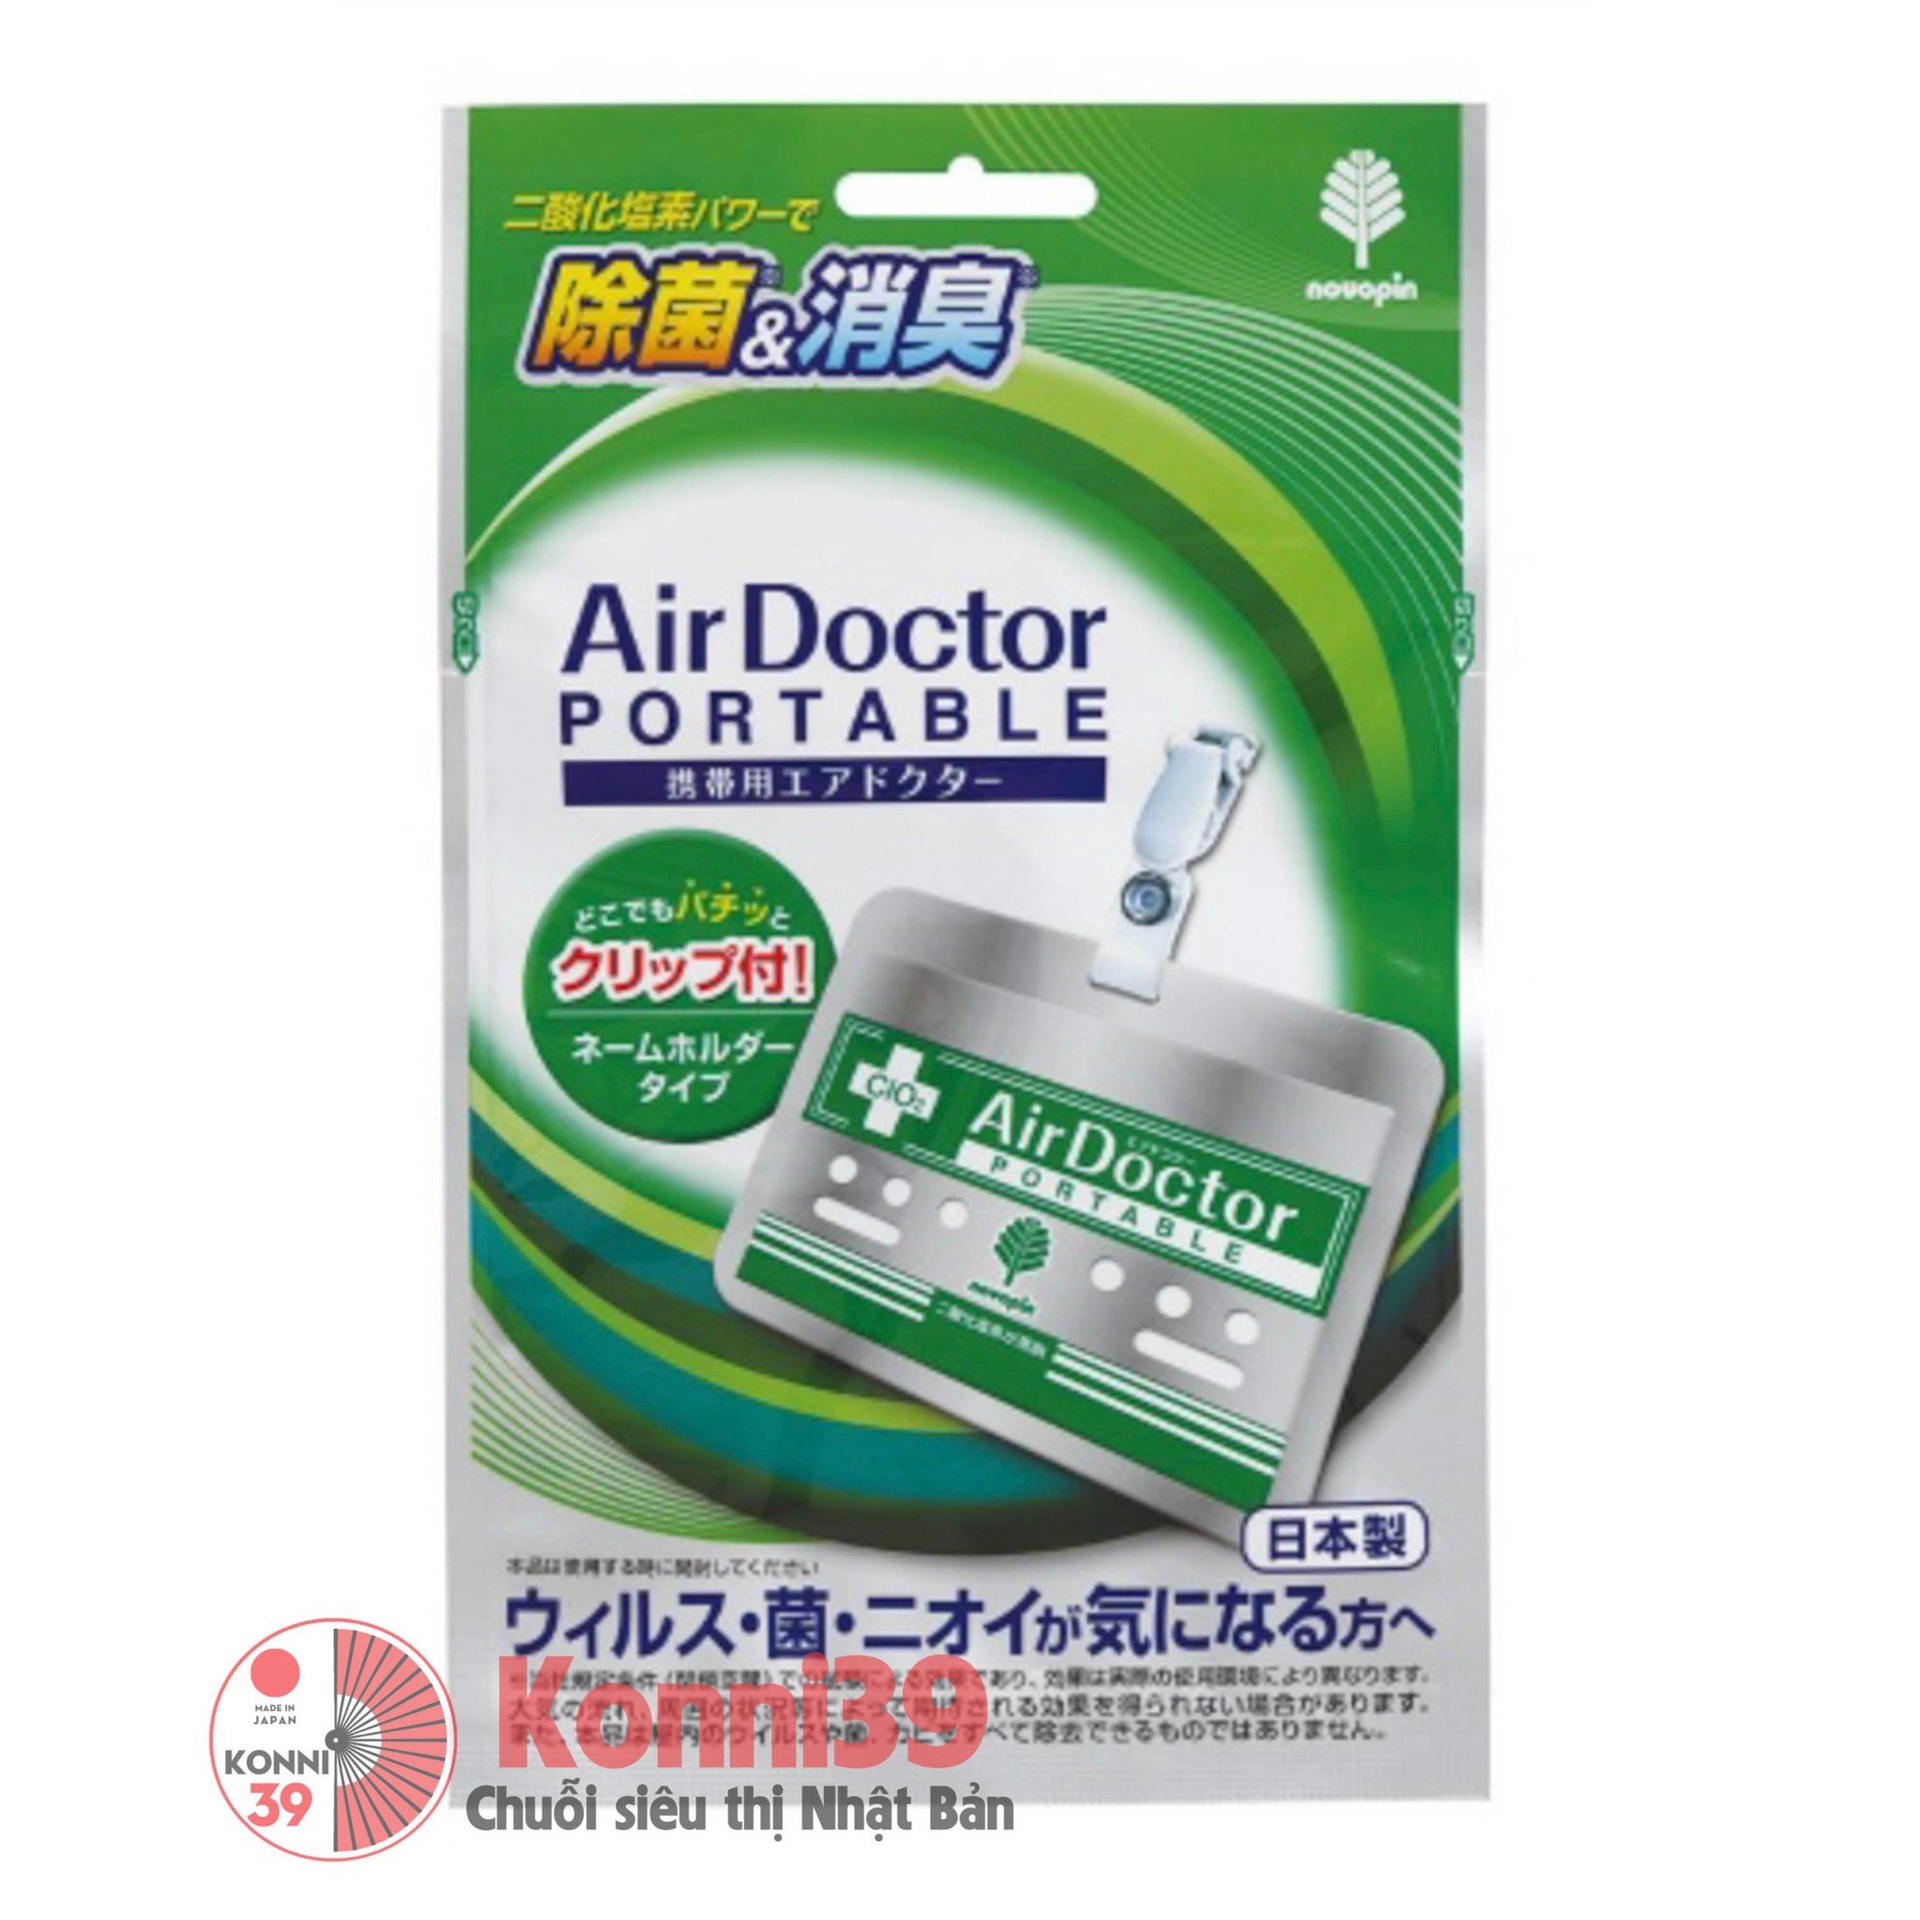 Thẻ kháng khuẩn virus khử mùi AIR DOCTOR 1 tháng (màu xanh)